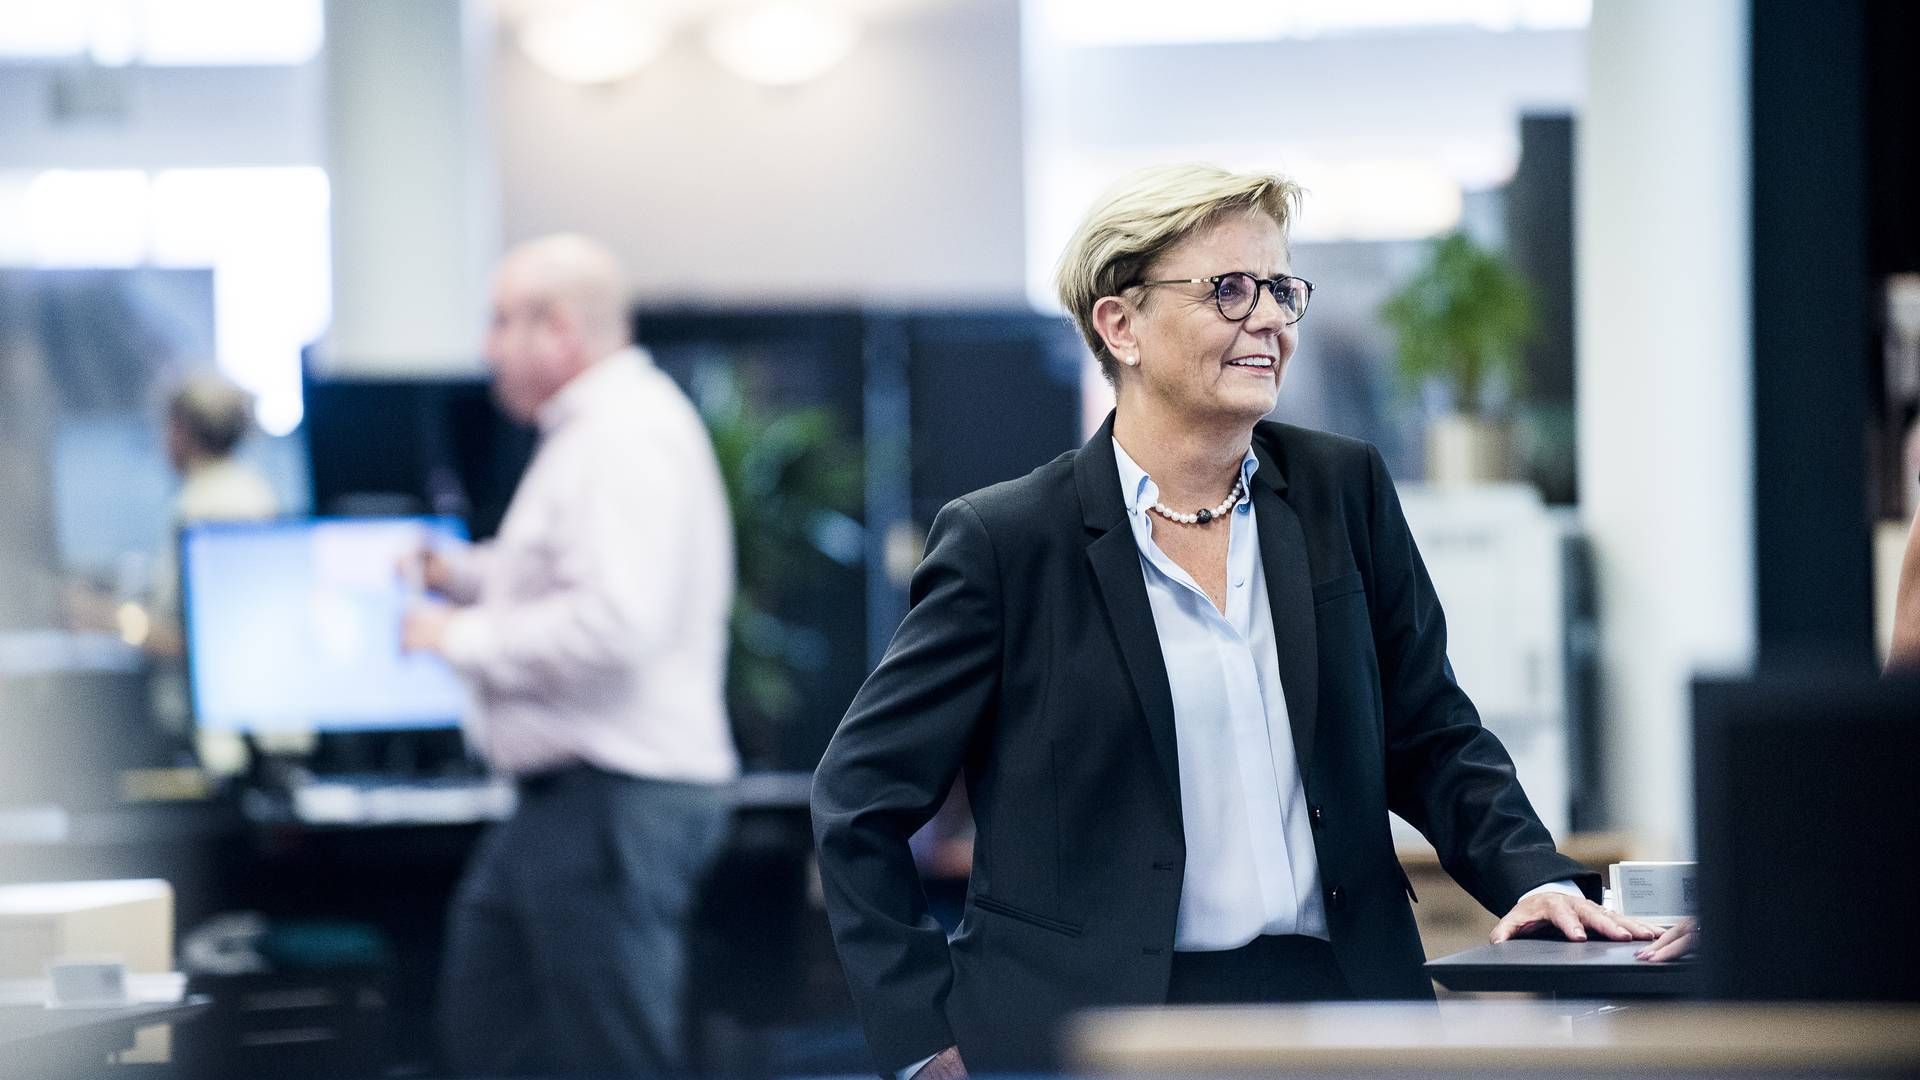 Karen Frøsig, adm. direktør i Sydbank, kan glæde sig over, at banken har vendt udlånstilbagegang til tocifret vækst. | Foto: sydbank / pr